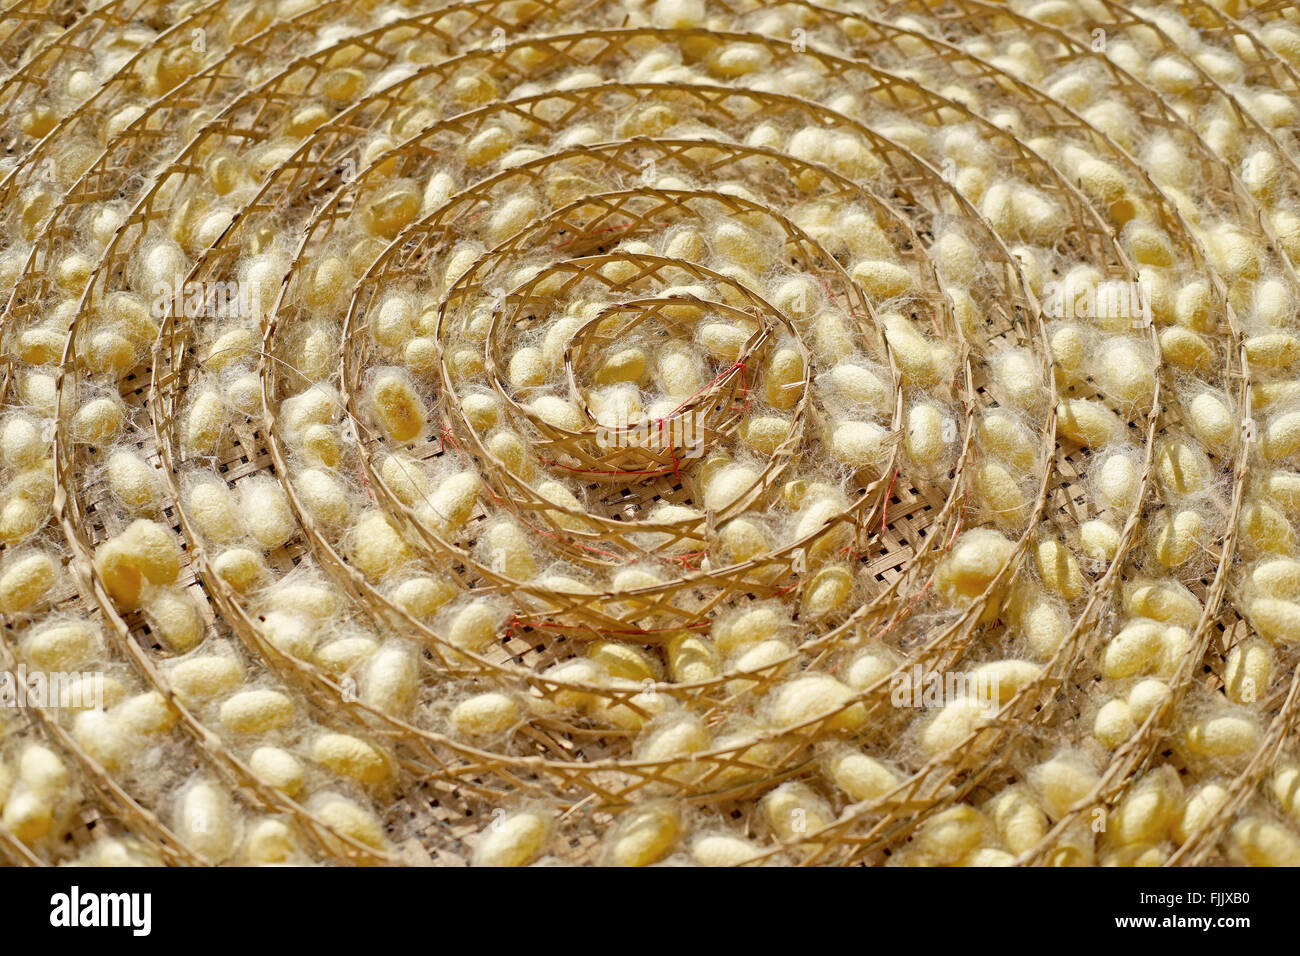 Les cocons de vers à soie jaune chrysalide dans les nids, le cycle de vie des vers à soie Banque D'Images